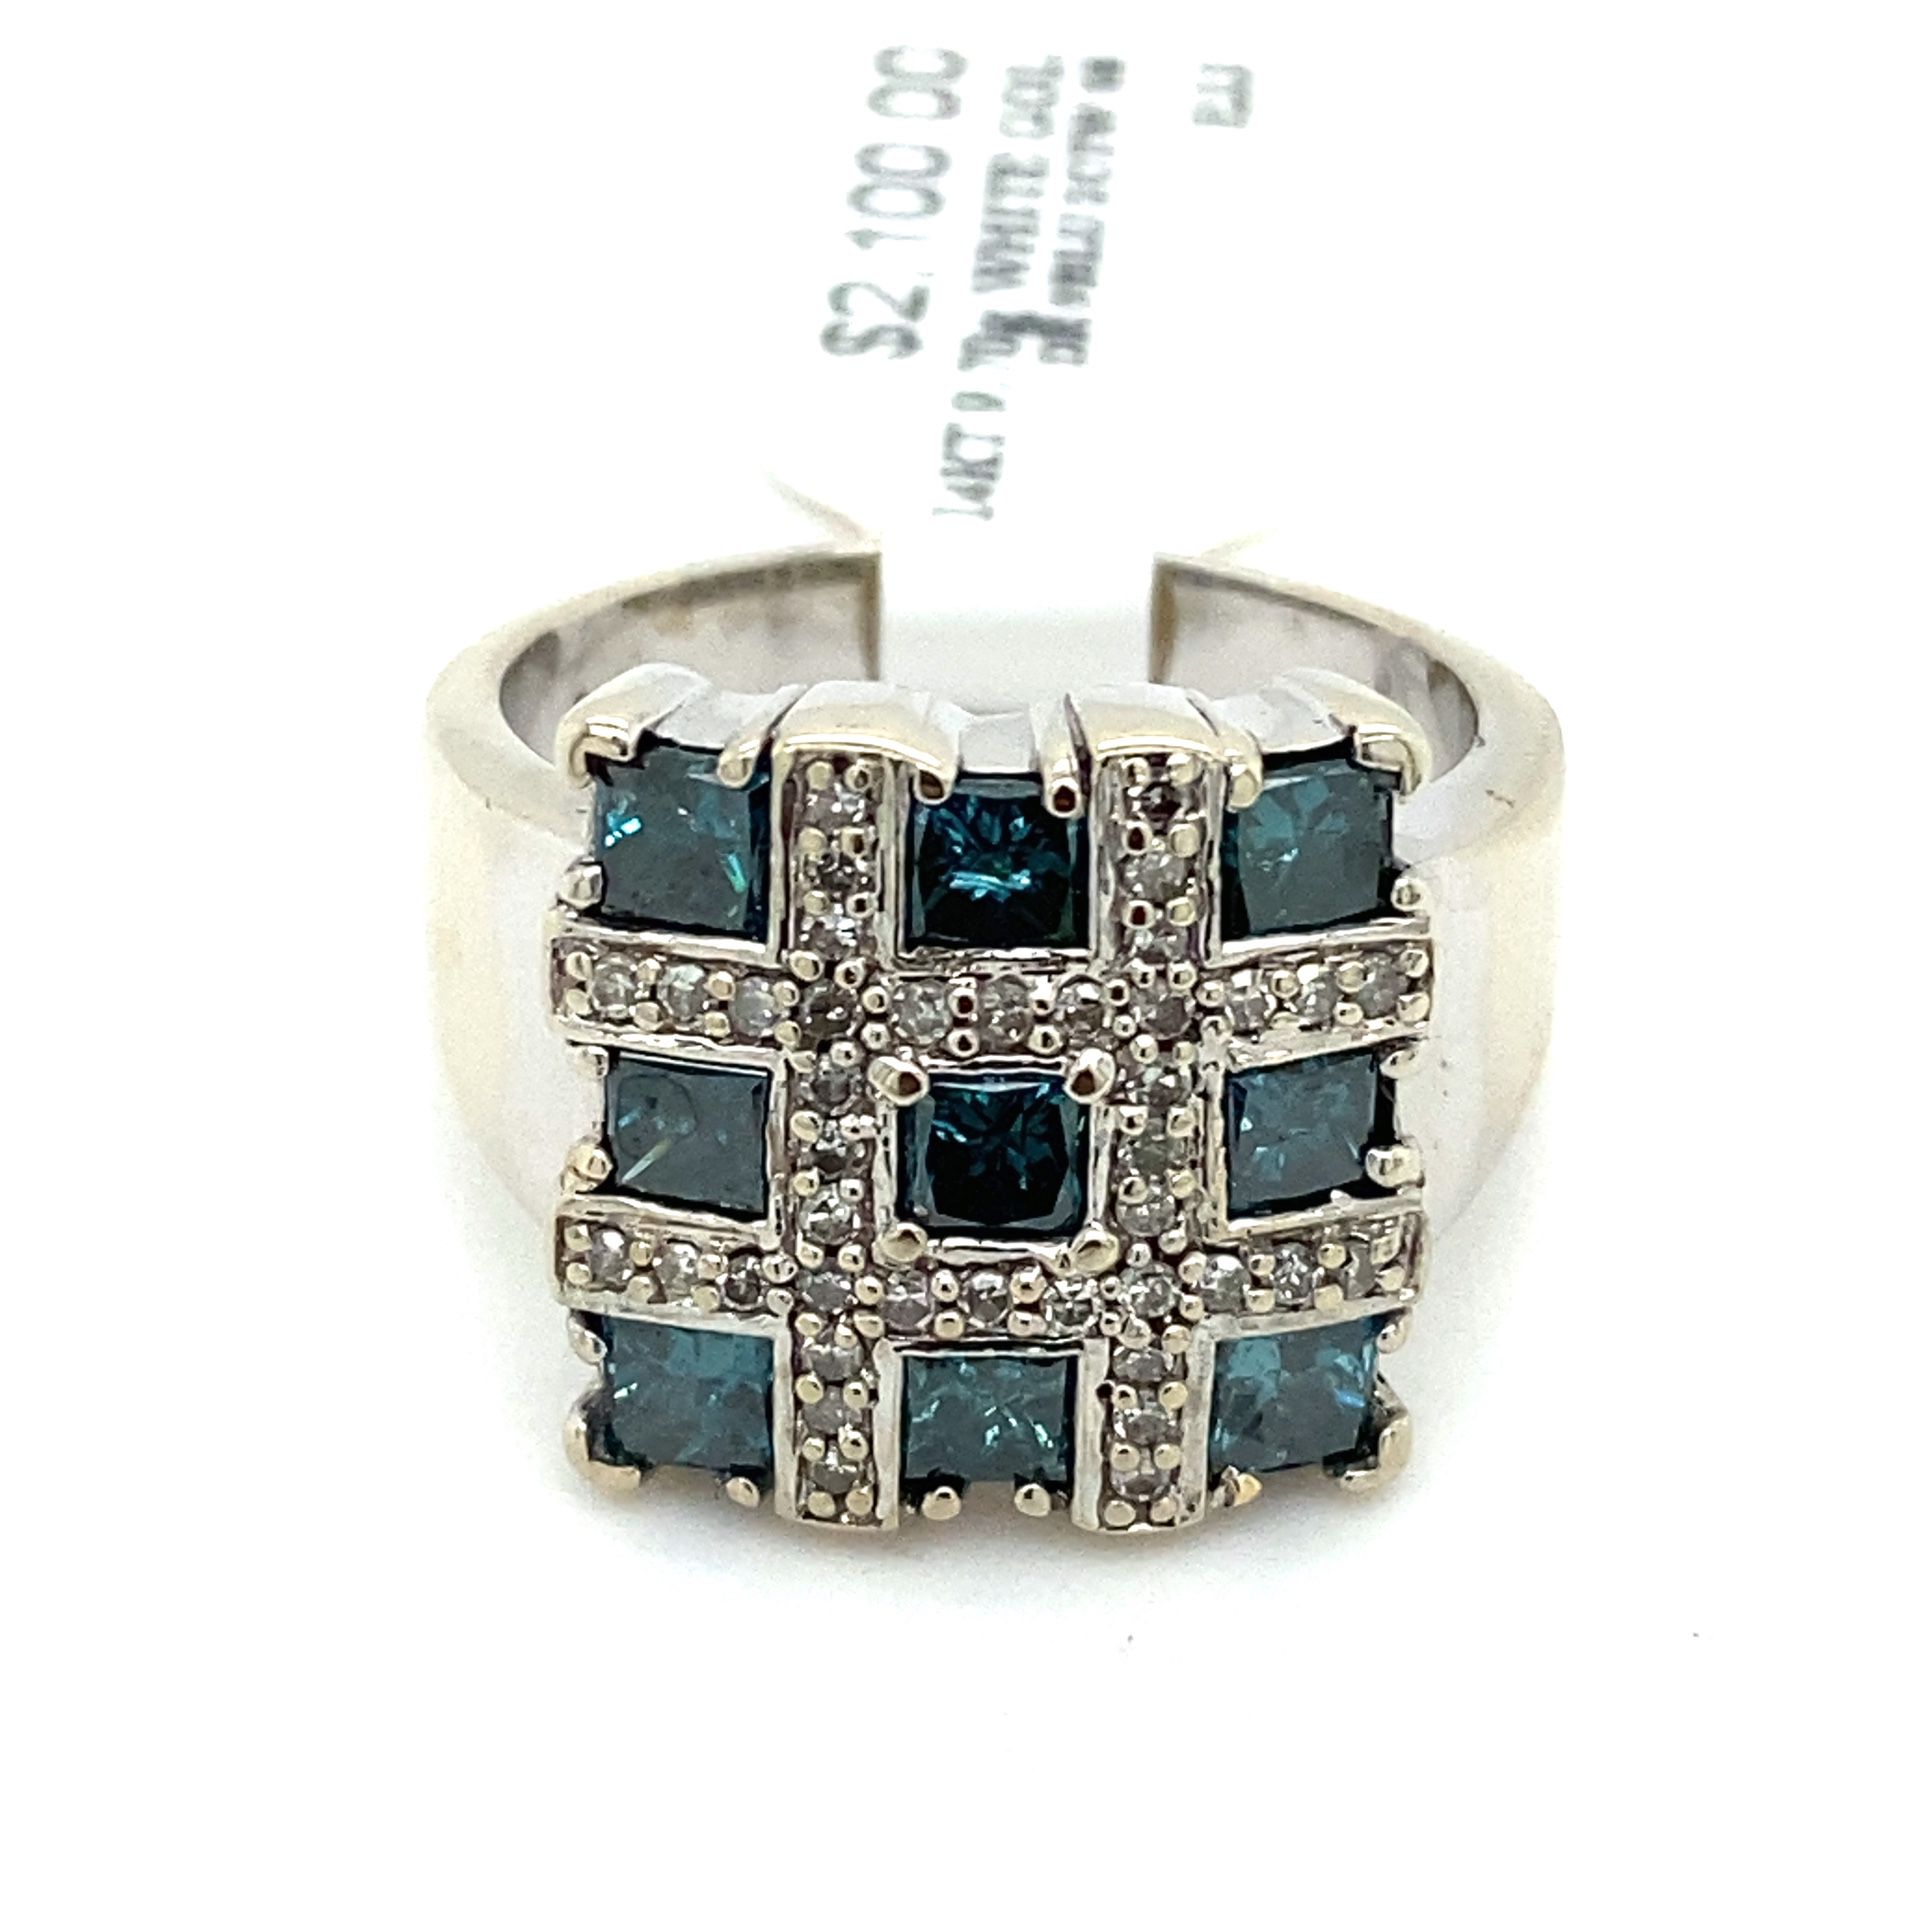 14k White Gold Diamond Ring  Wit Blue And White Diams 2ctw 9.7grams Size 8 132654 